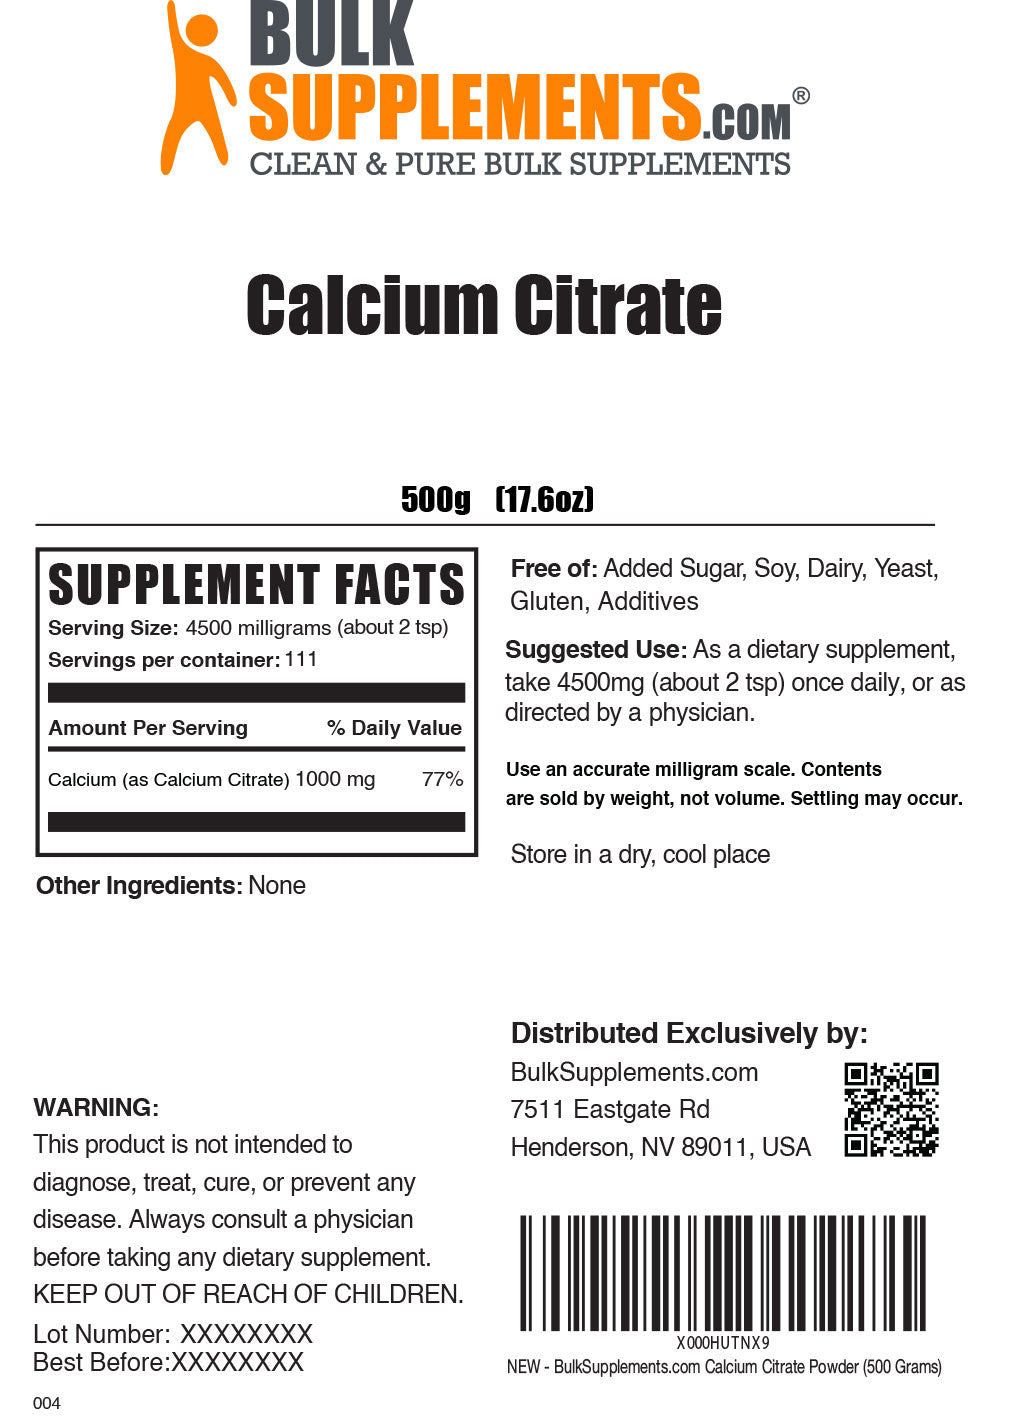 Calcium Citrate Powder Label 500g